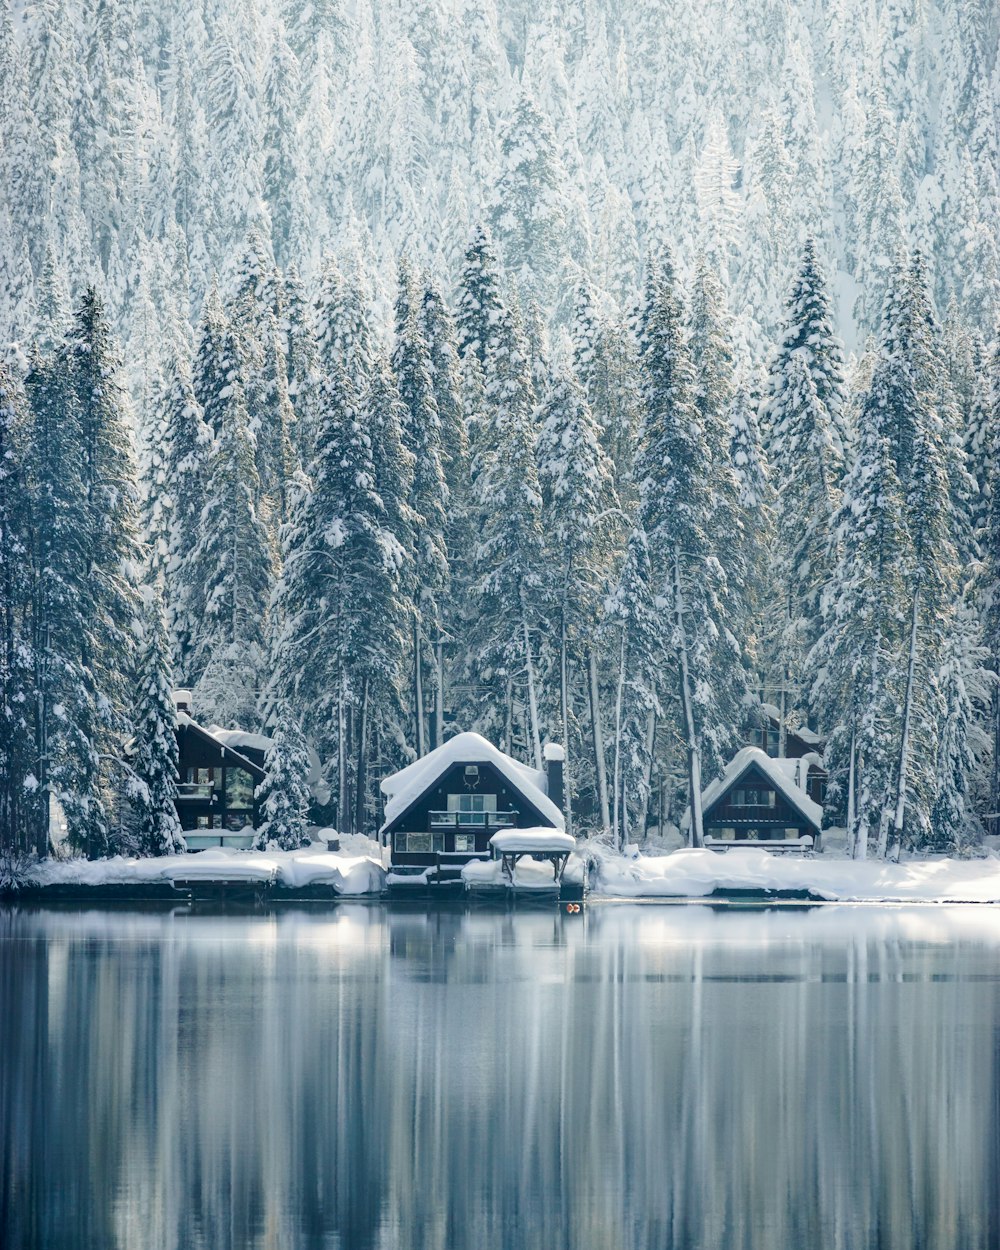 schneebedeckte Häuser in der Nähe von Bäumen